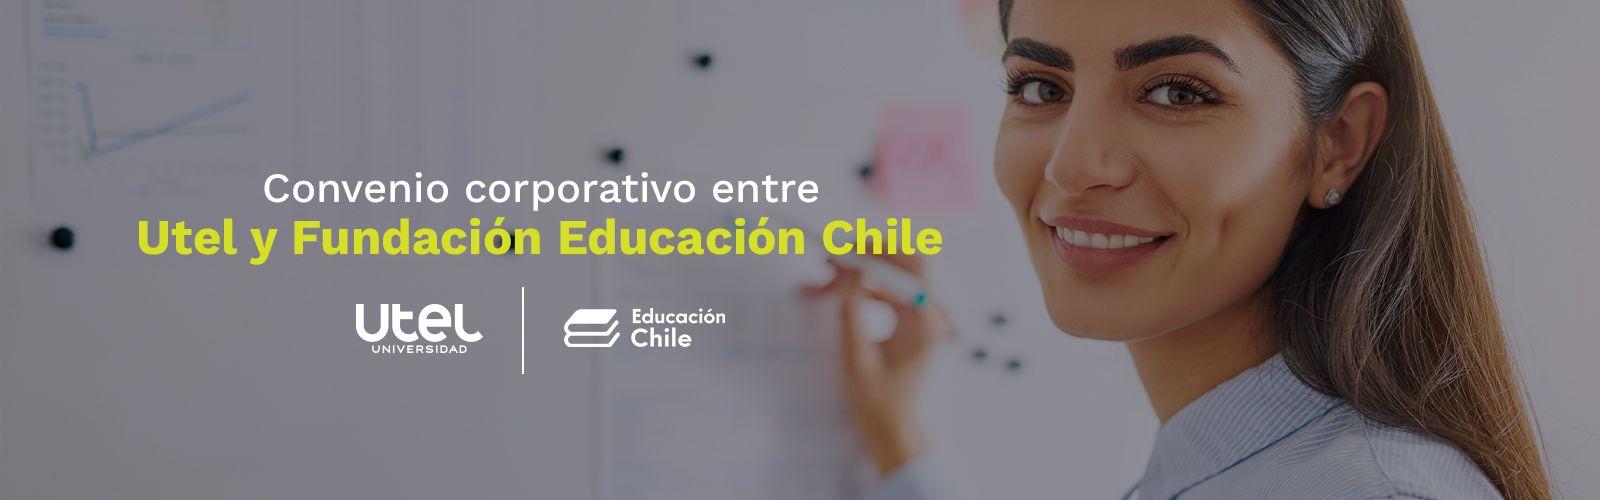 Convenio-corporativo-entre-Utel-y-Fundacion-Educacion-Chile